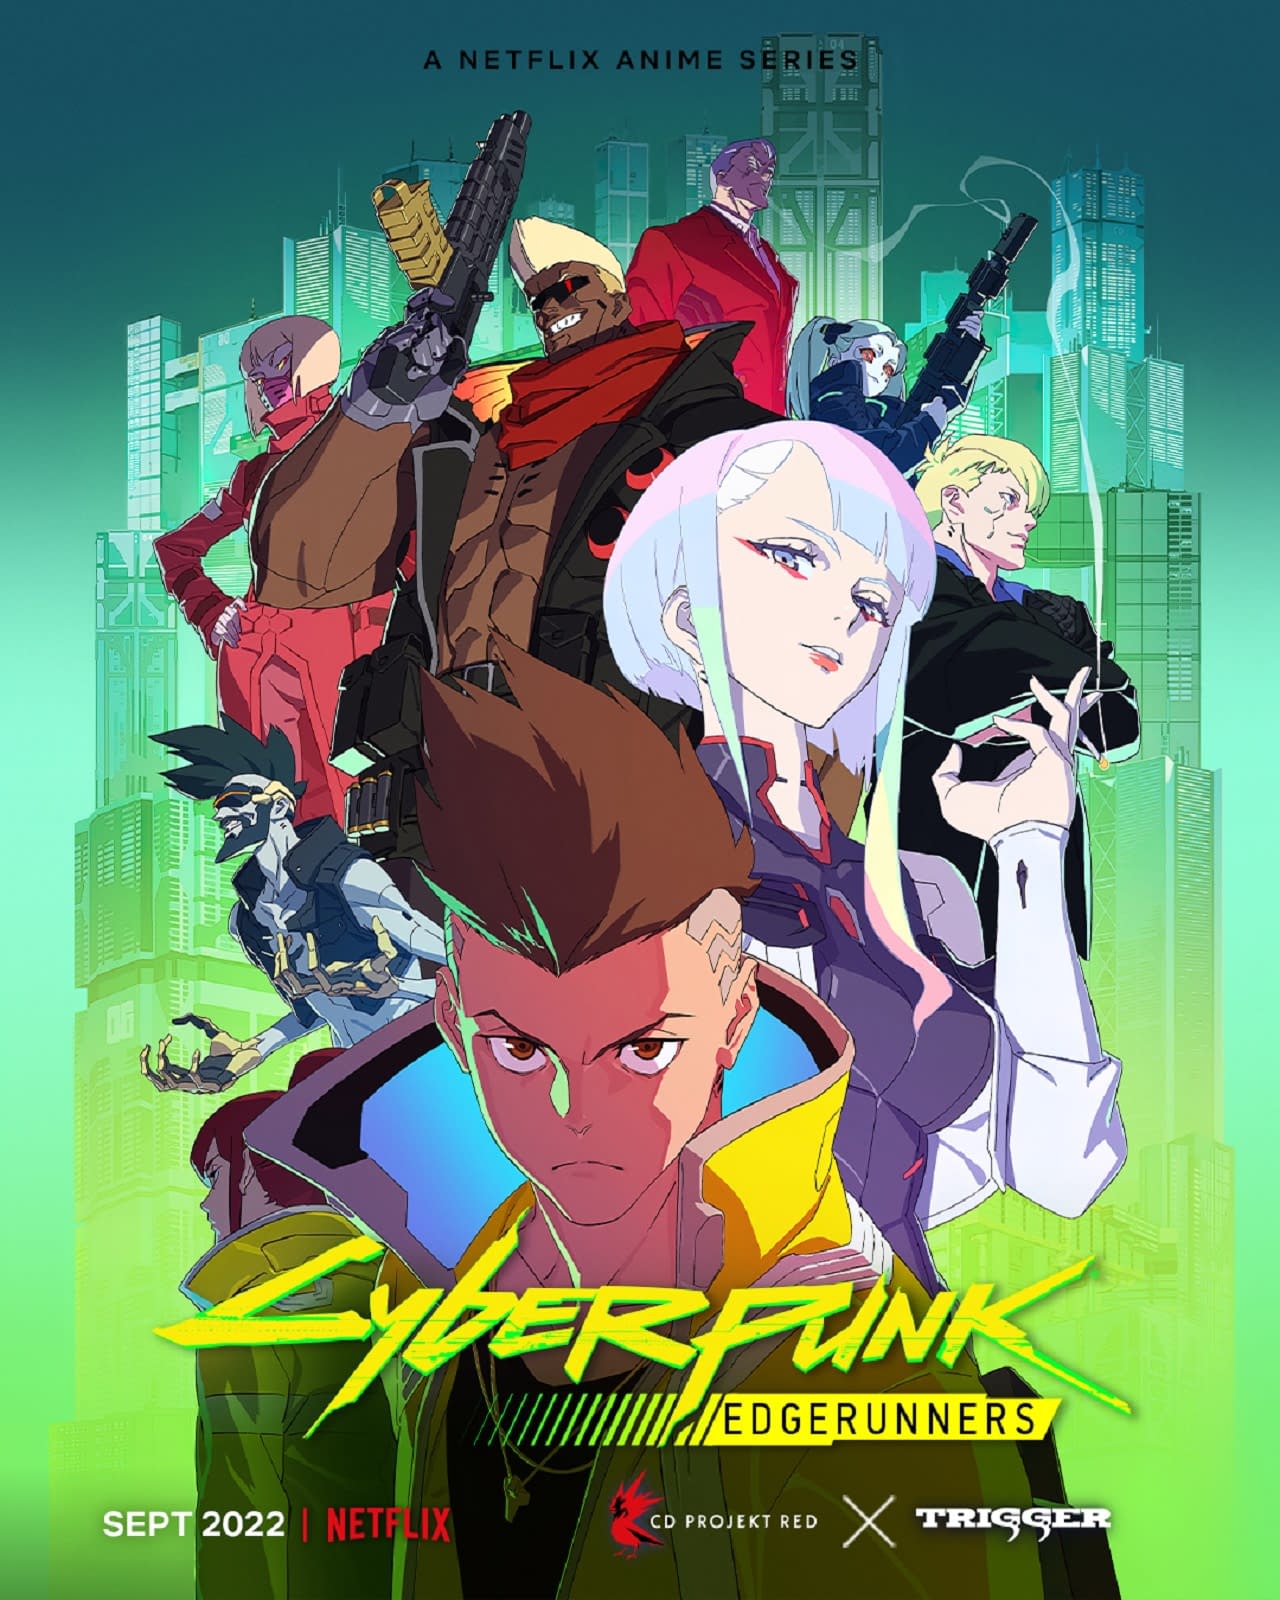 Cyberpunk: Edgerunners: Netflix, Studio Trigger Release Anime Trailer